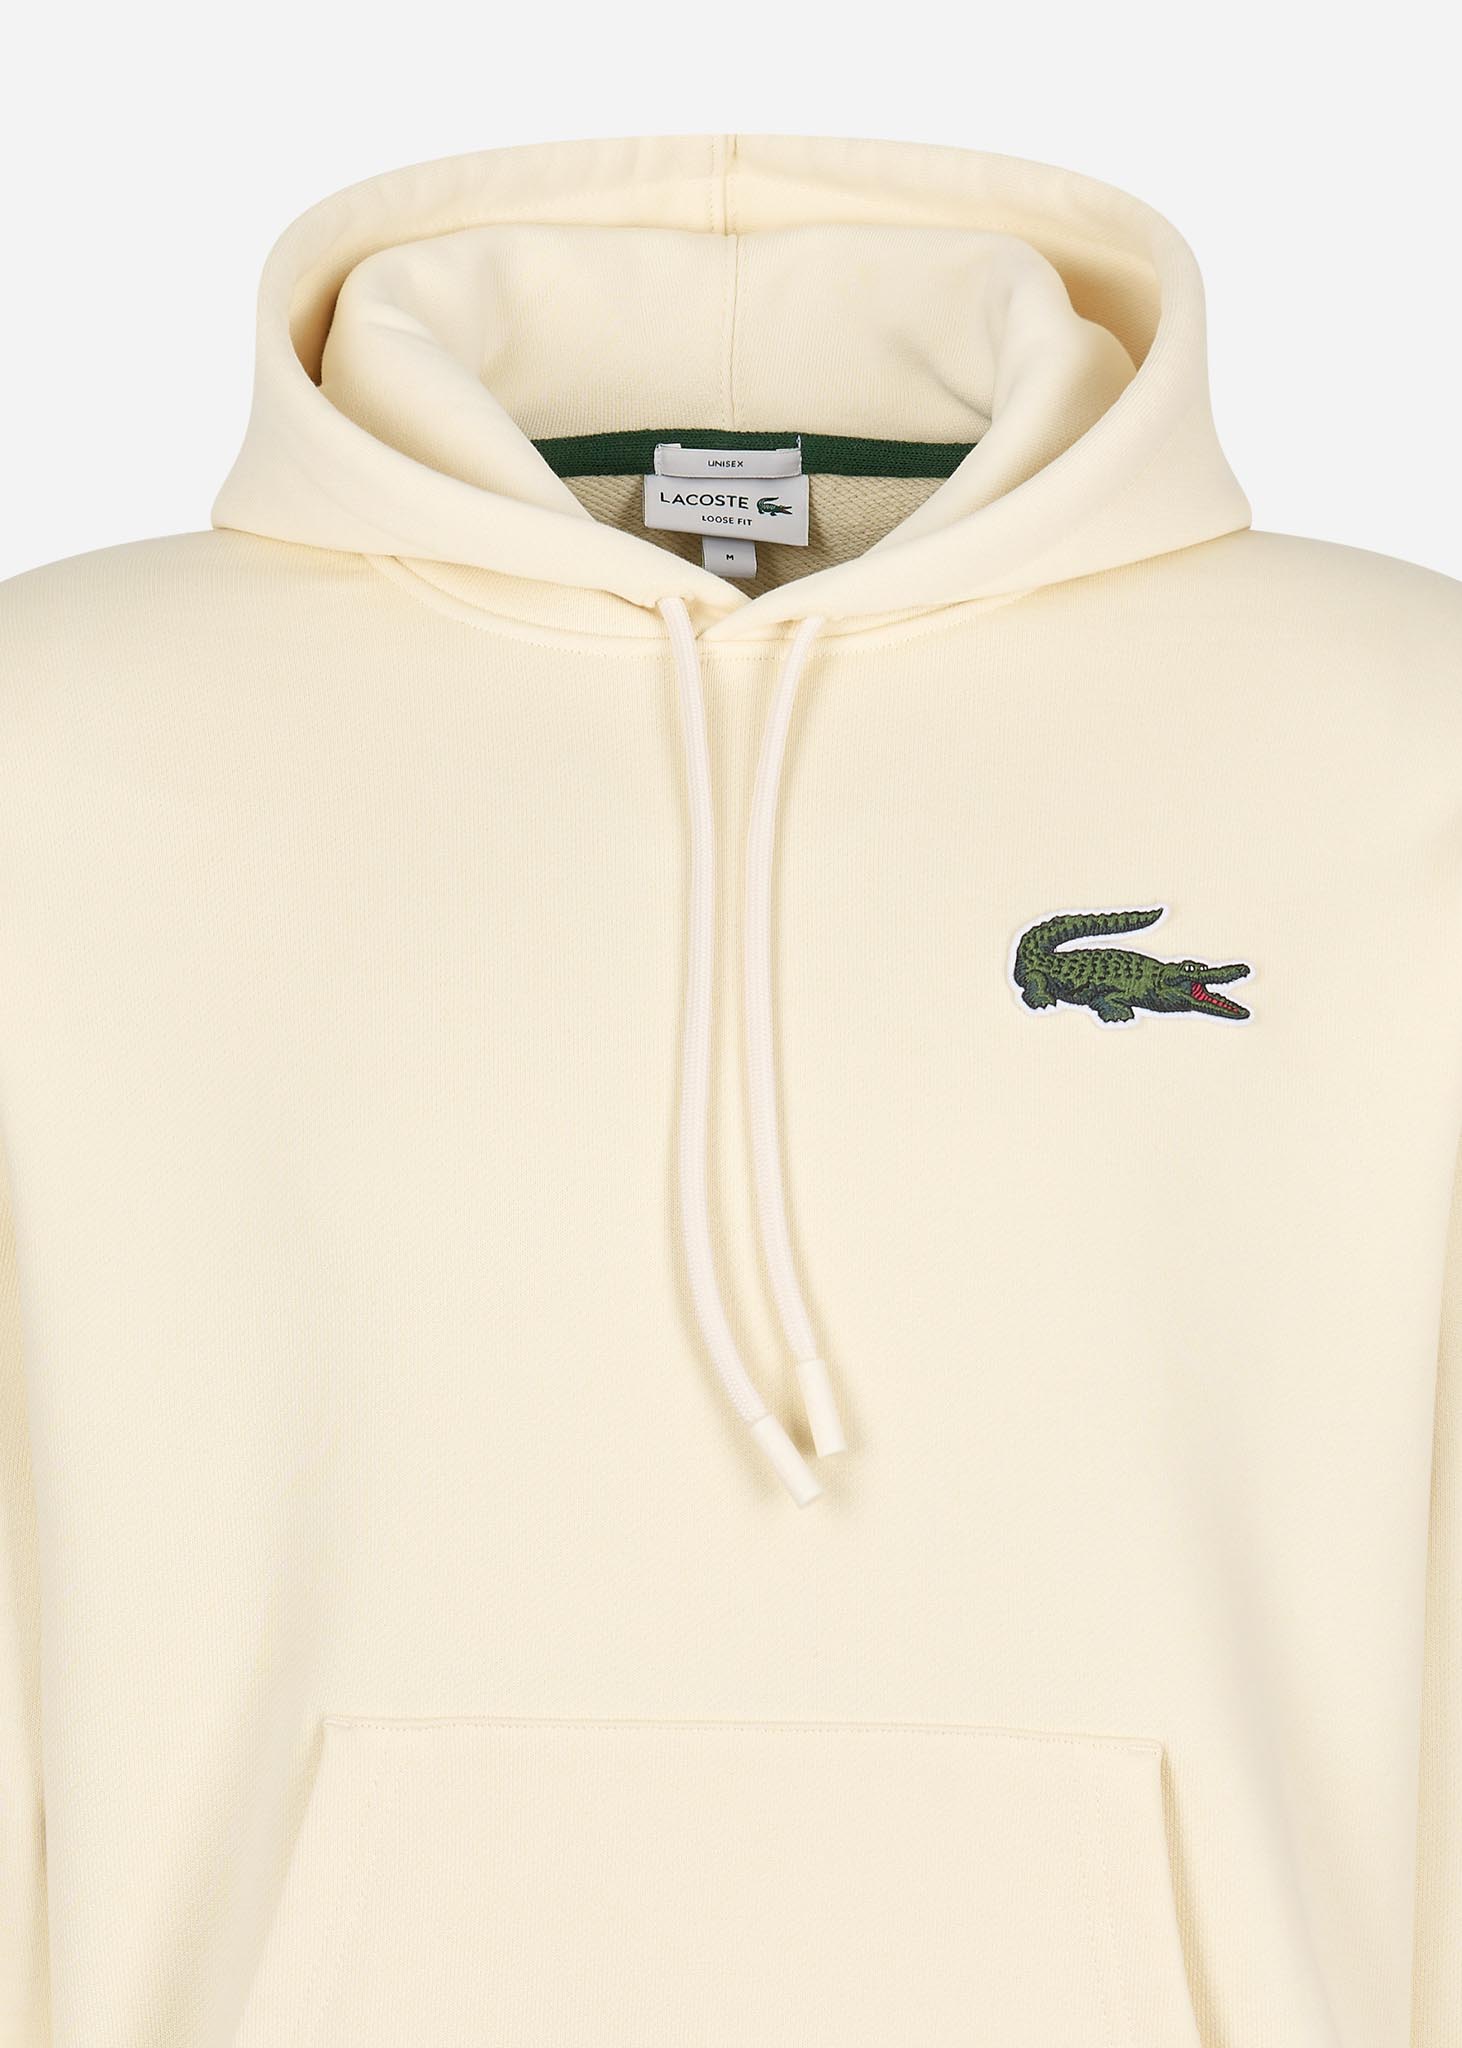 Lacoste Hoodies  Large logo hoodie - lapland 